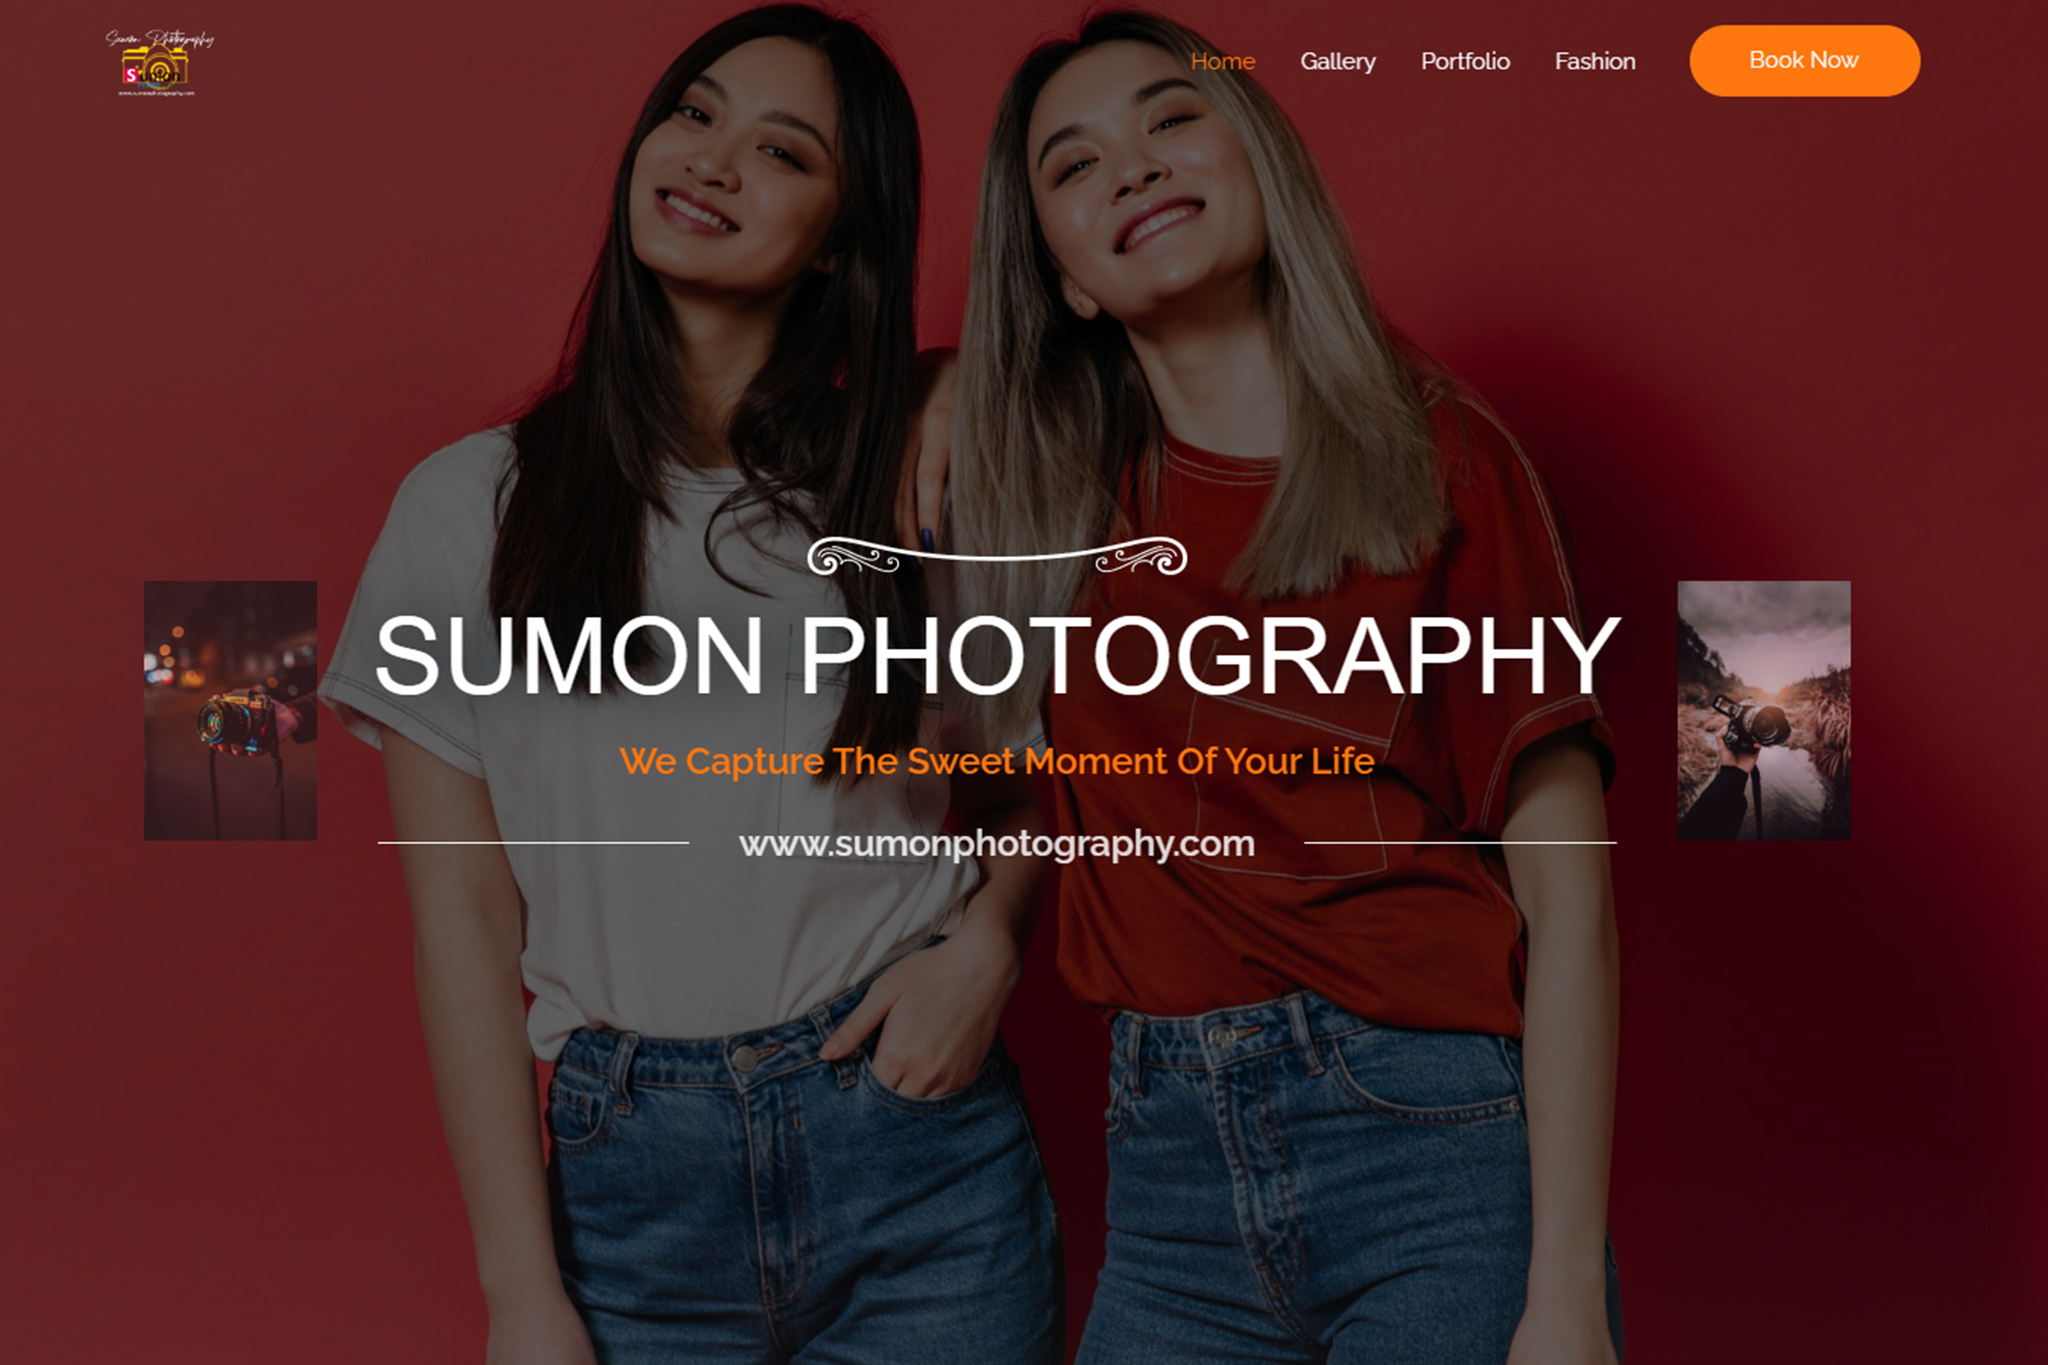 SUMON PHOTOGRAPHY